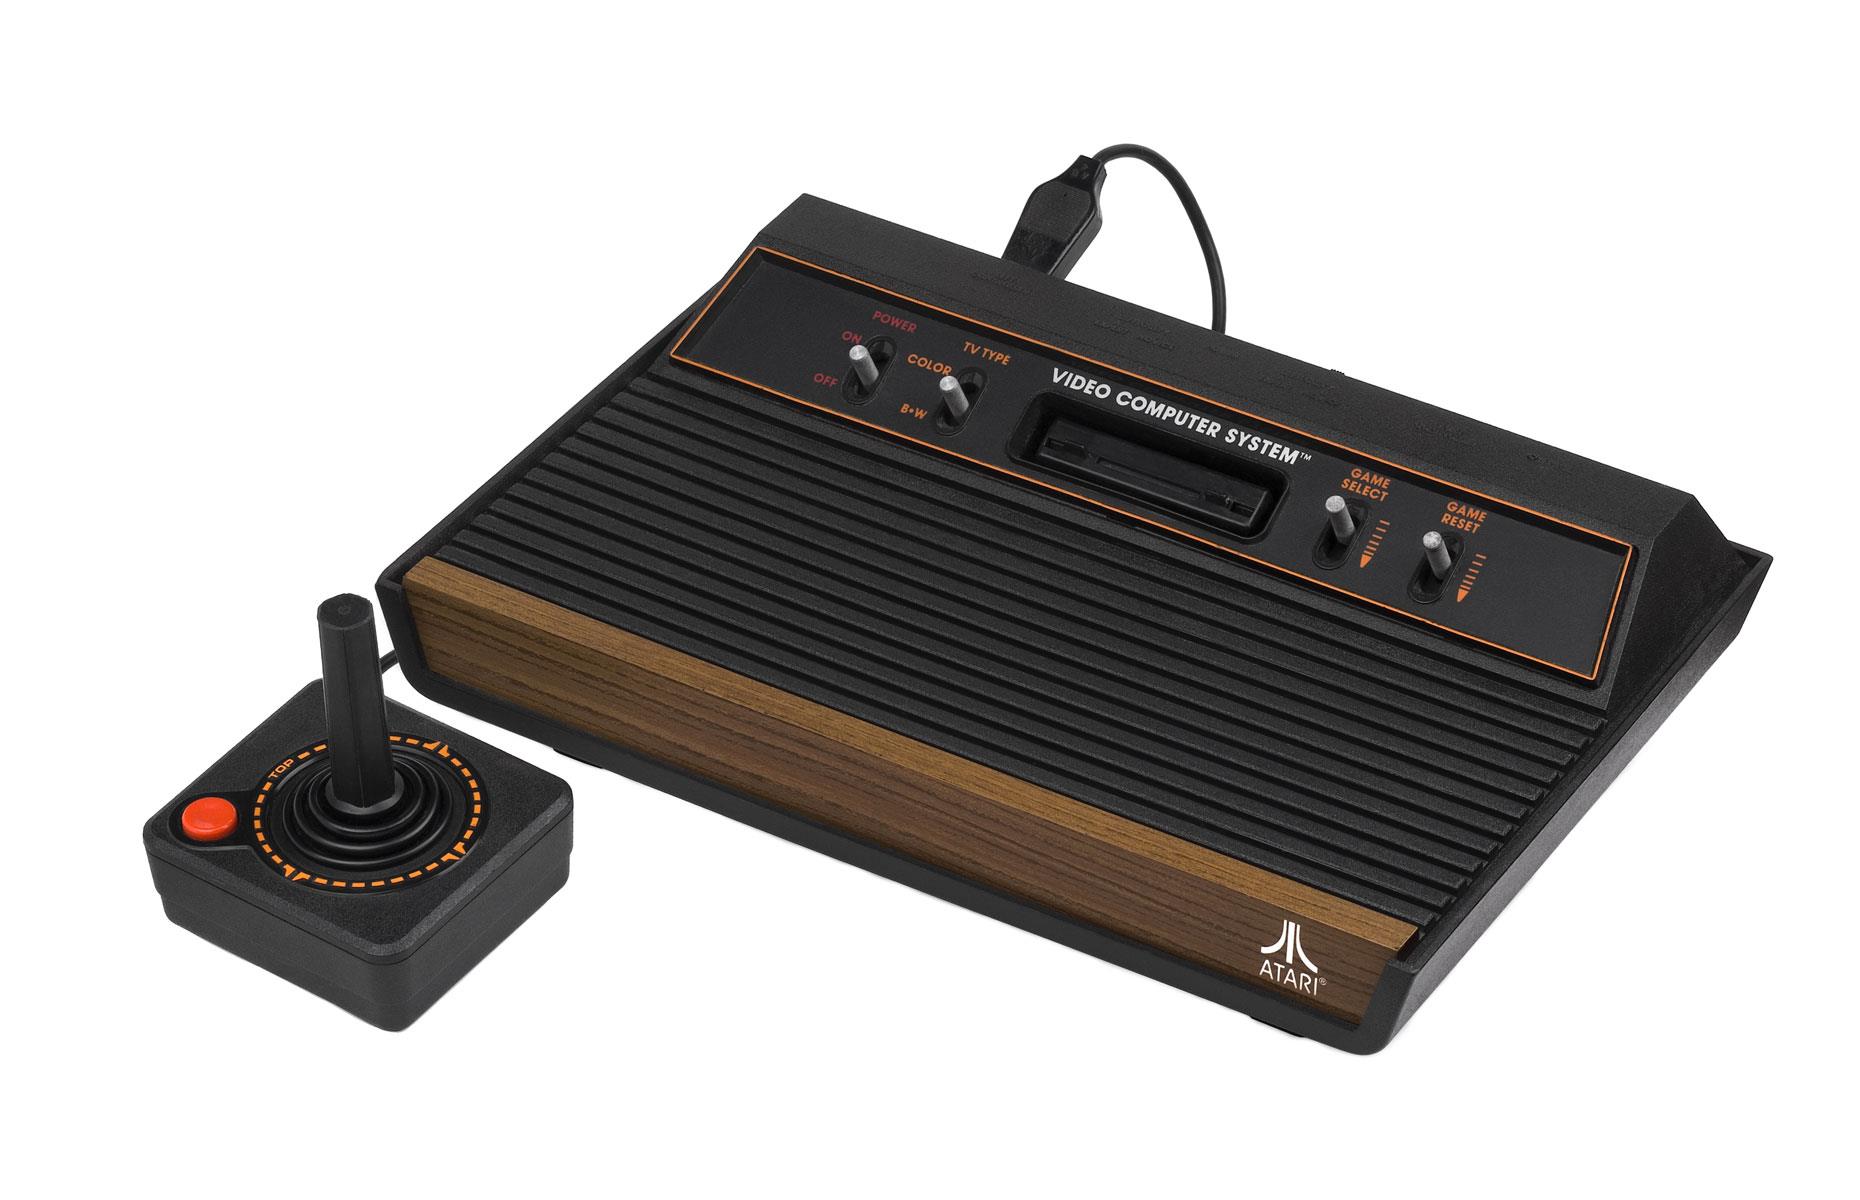 1970s: Atari 2600